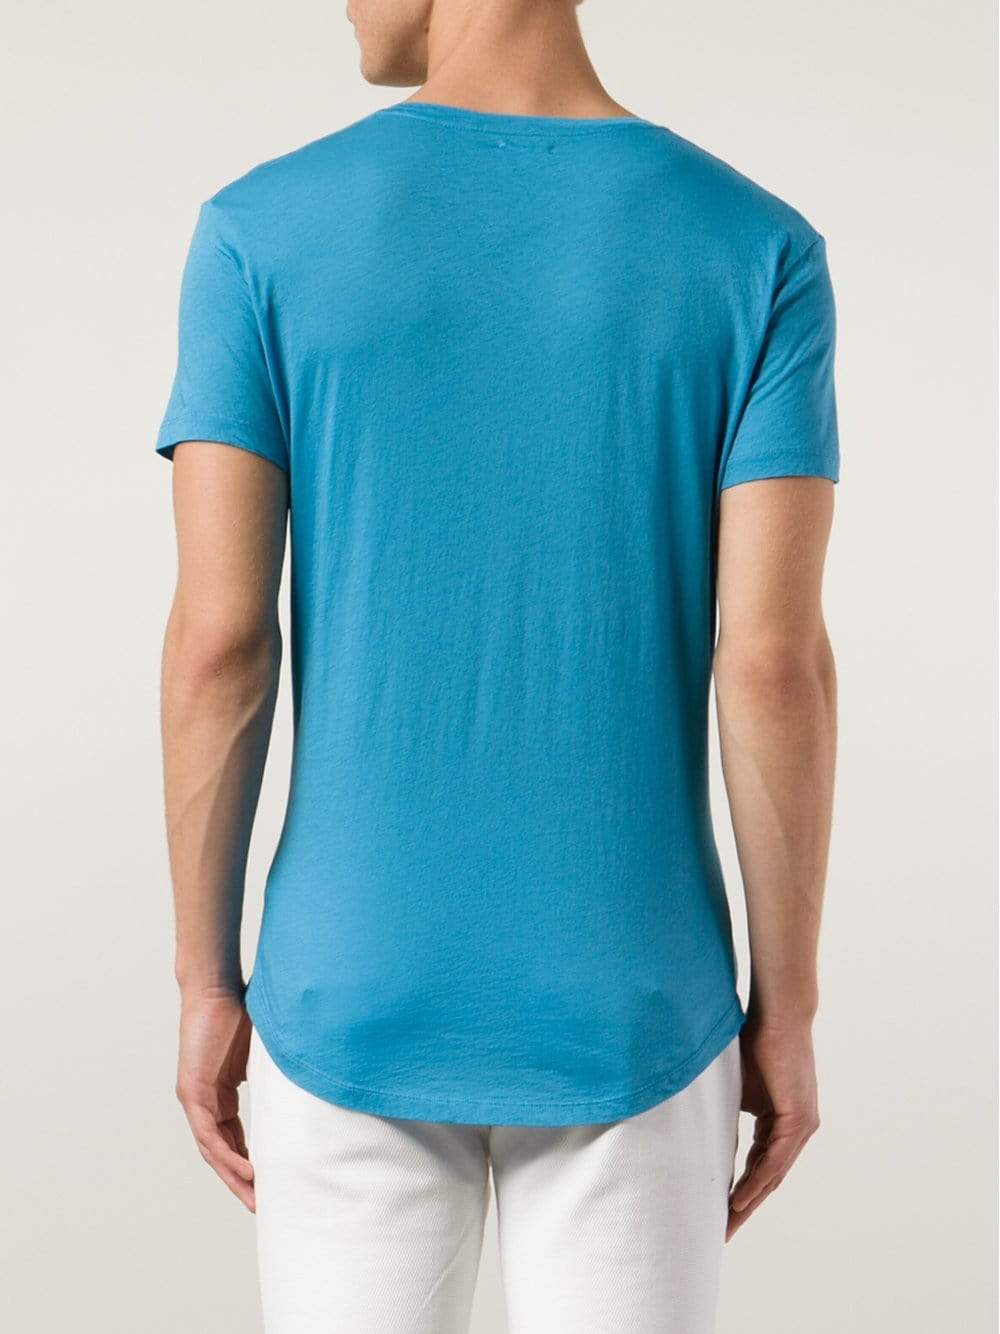 OB-V Tailored Fit V-neck T-Shirt MENSCLOTHINGTEE ORLEBAR BROWN   